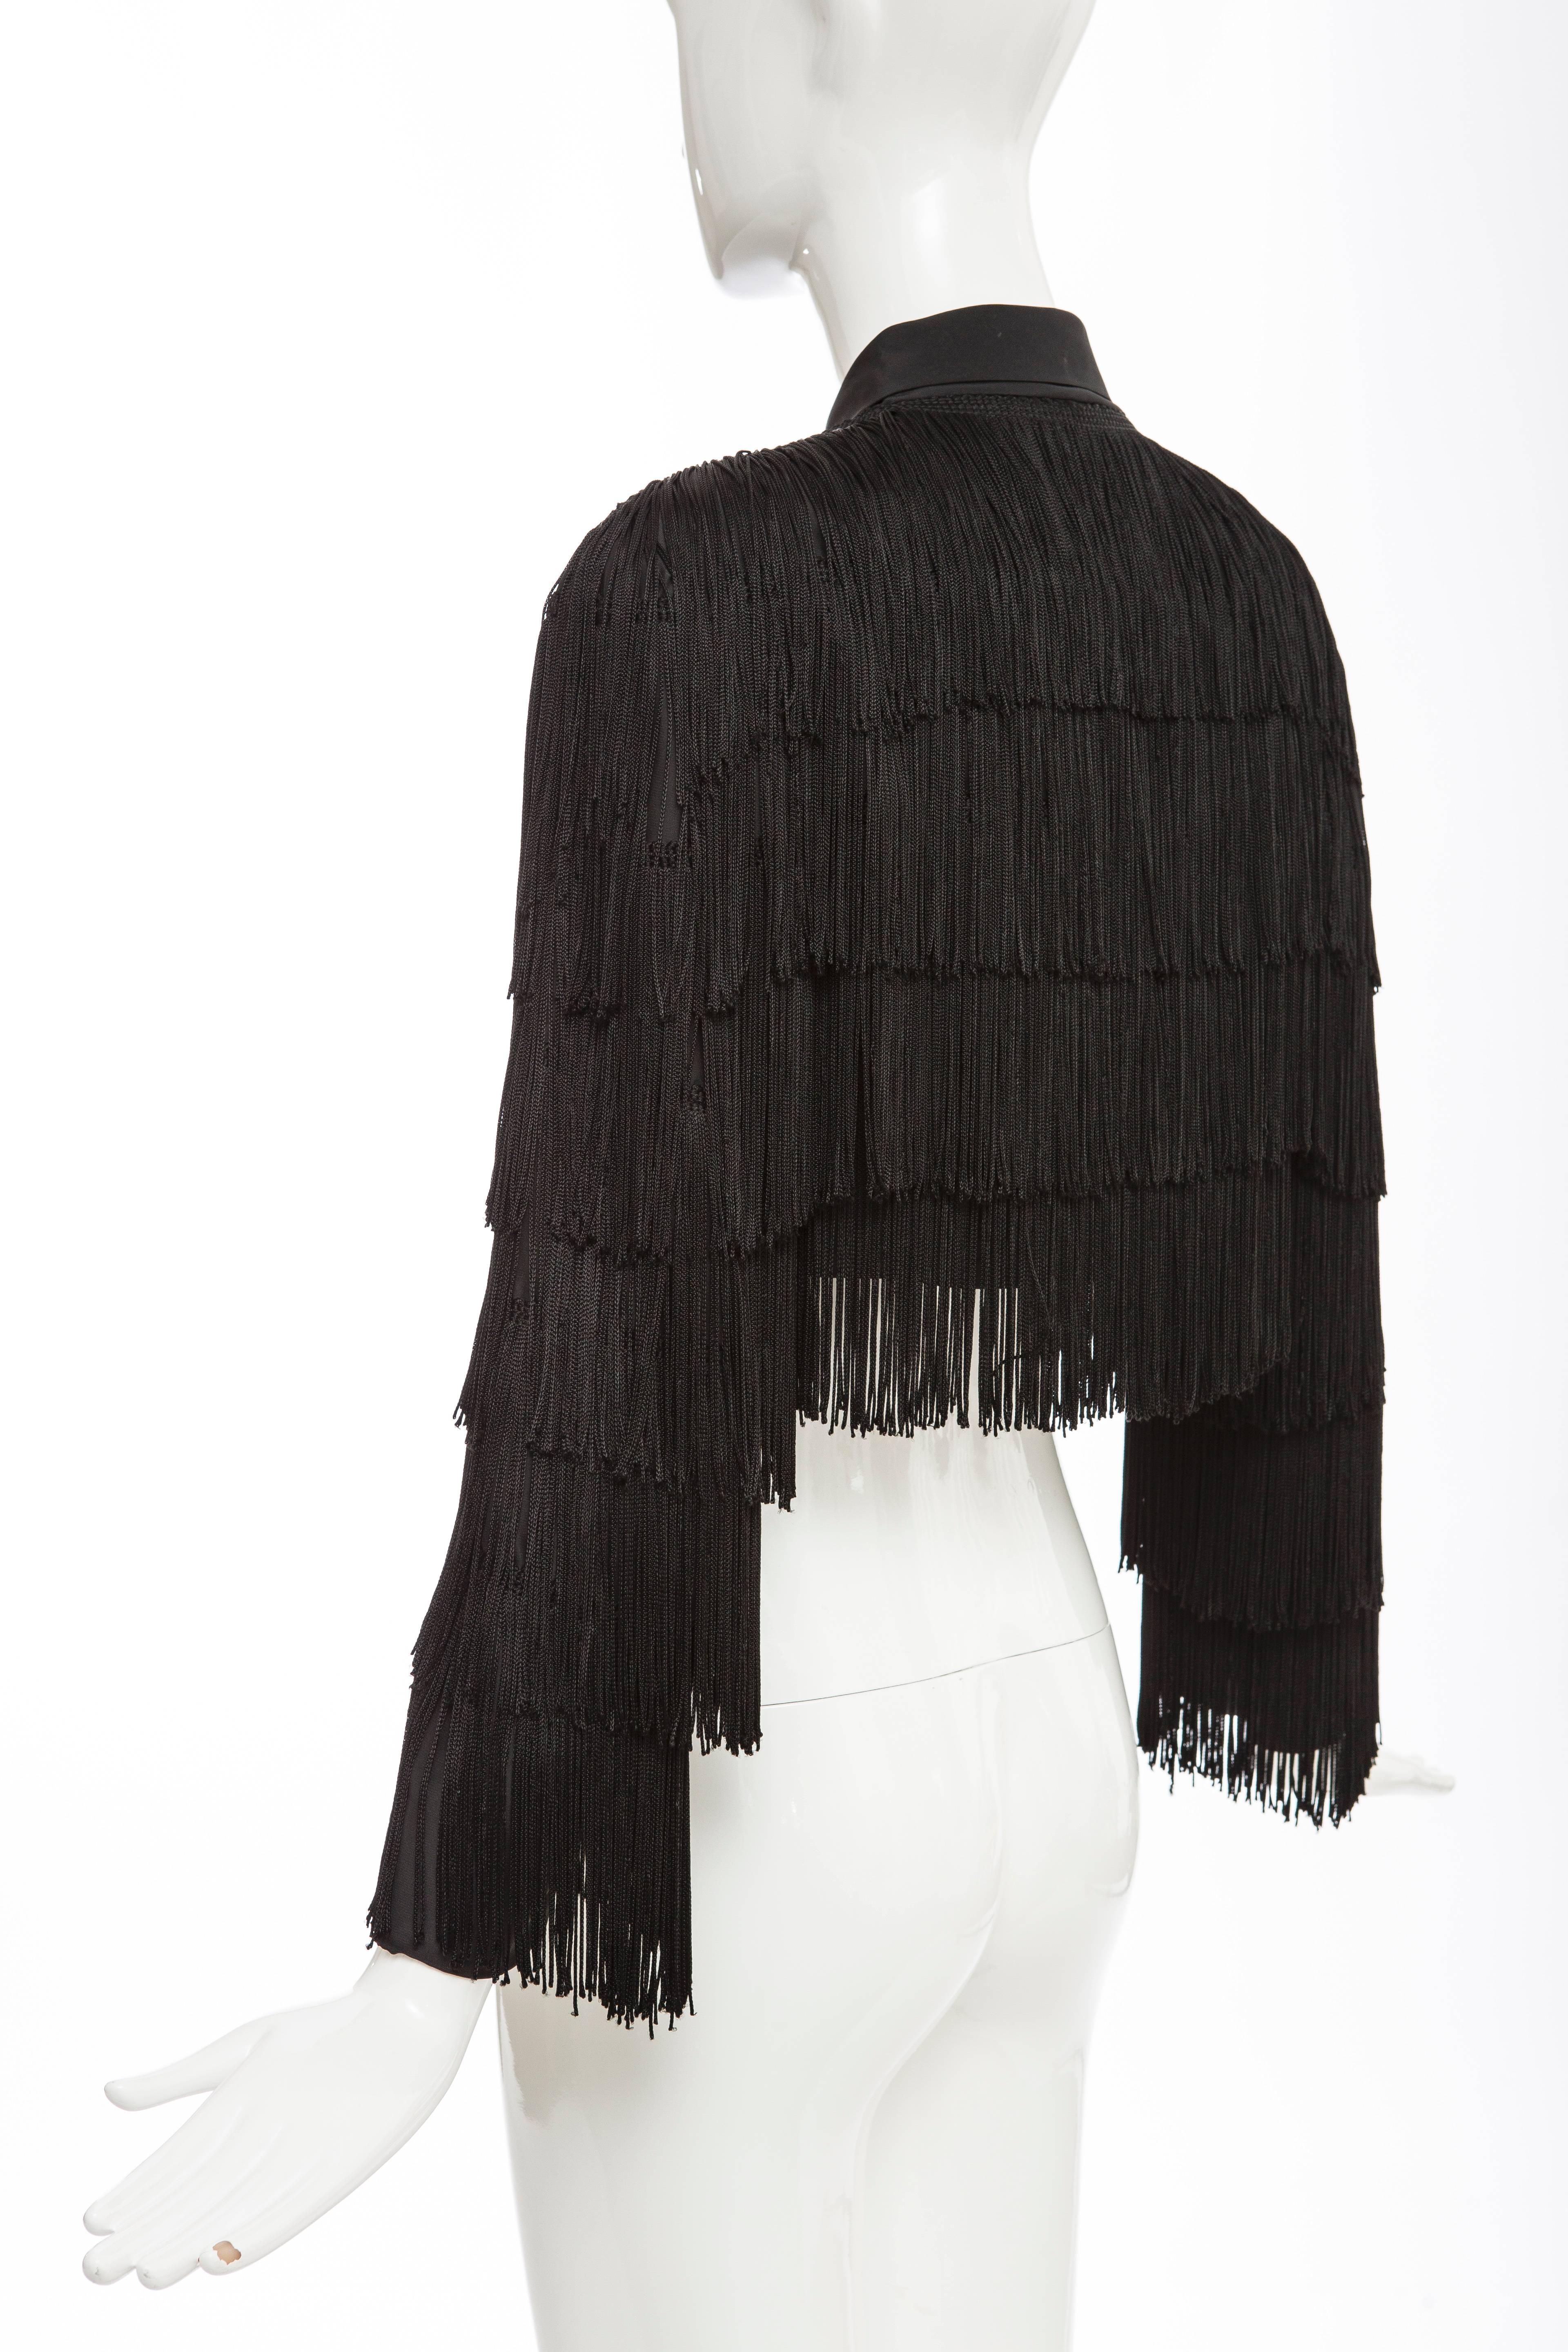 Norma Kamali OMO Black Fringe Cropped Jacket, Circa 1980's 4